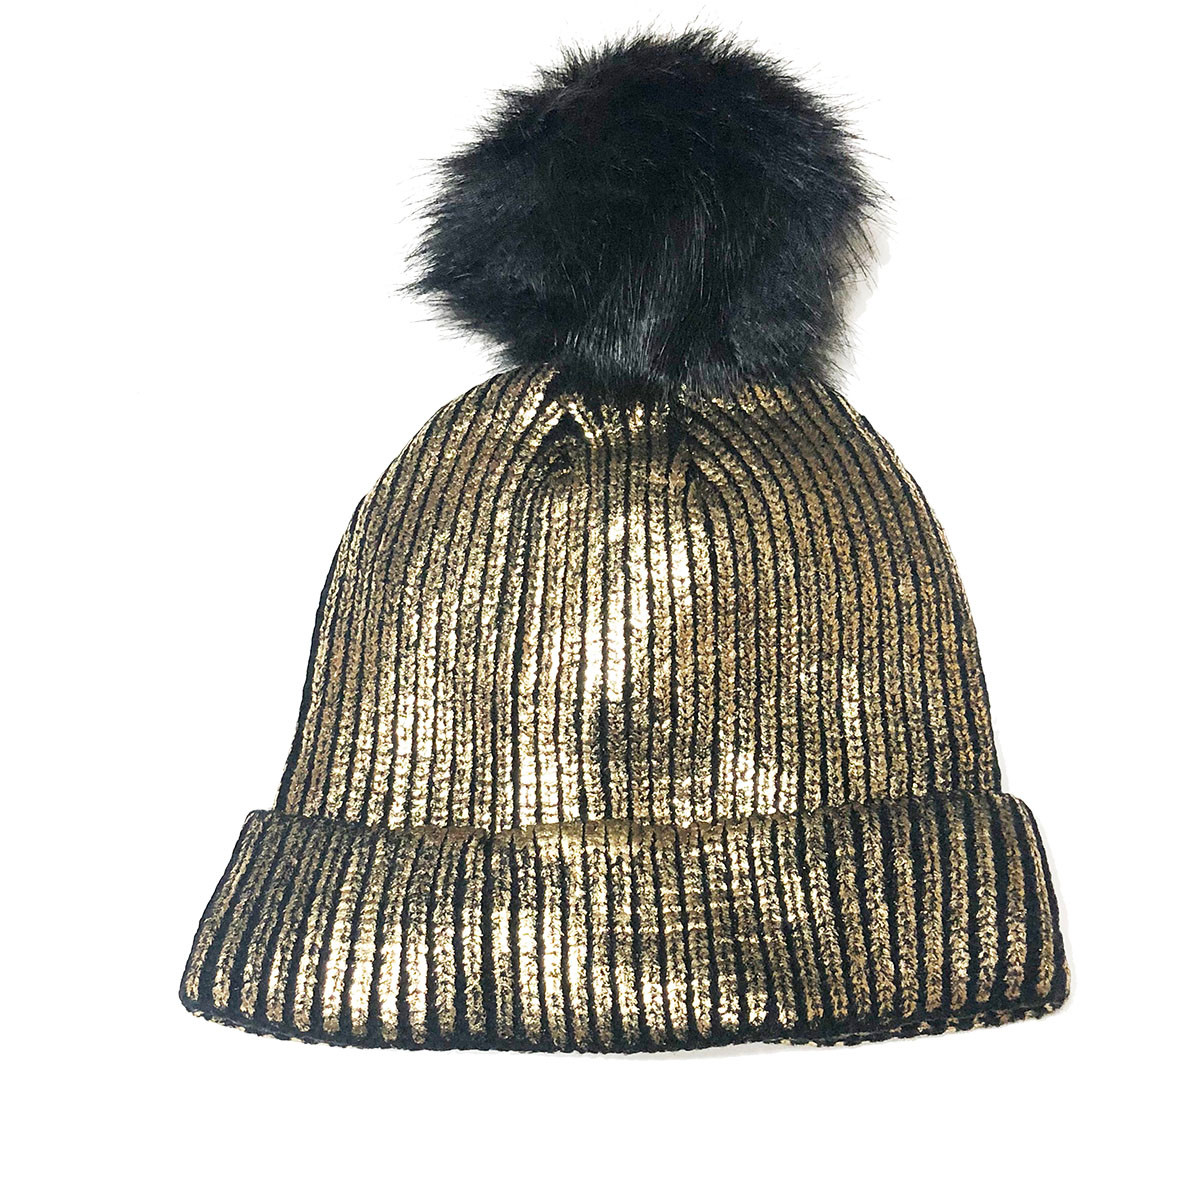 Black & Gold Shimmer Pom Knit Hat - The Natural Hair Shop